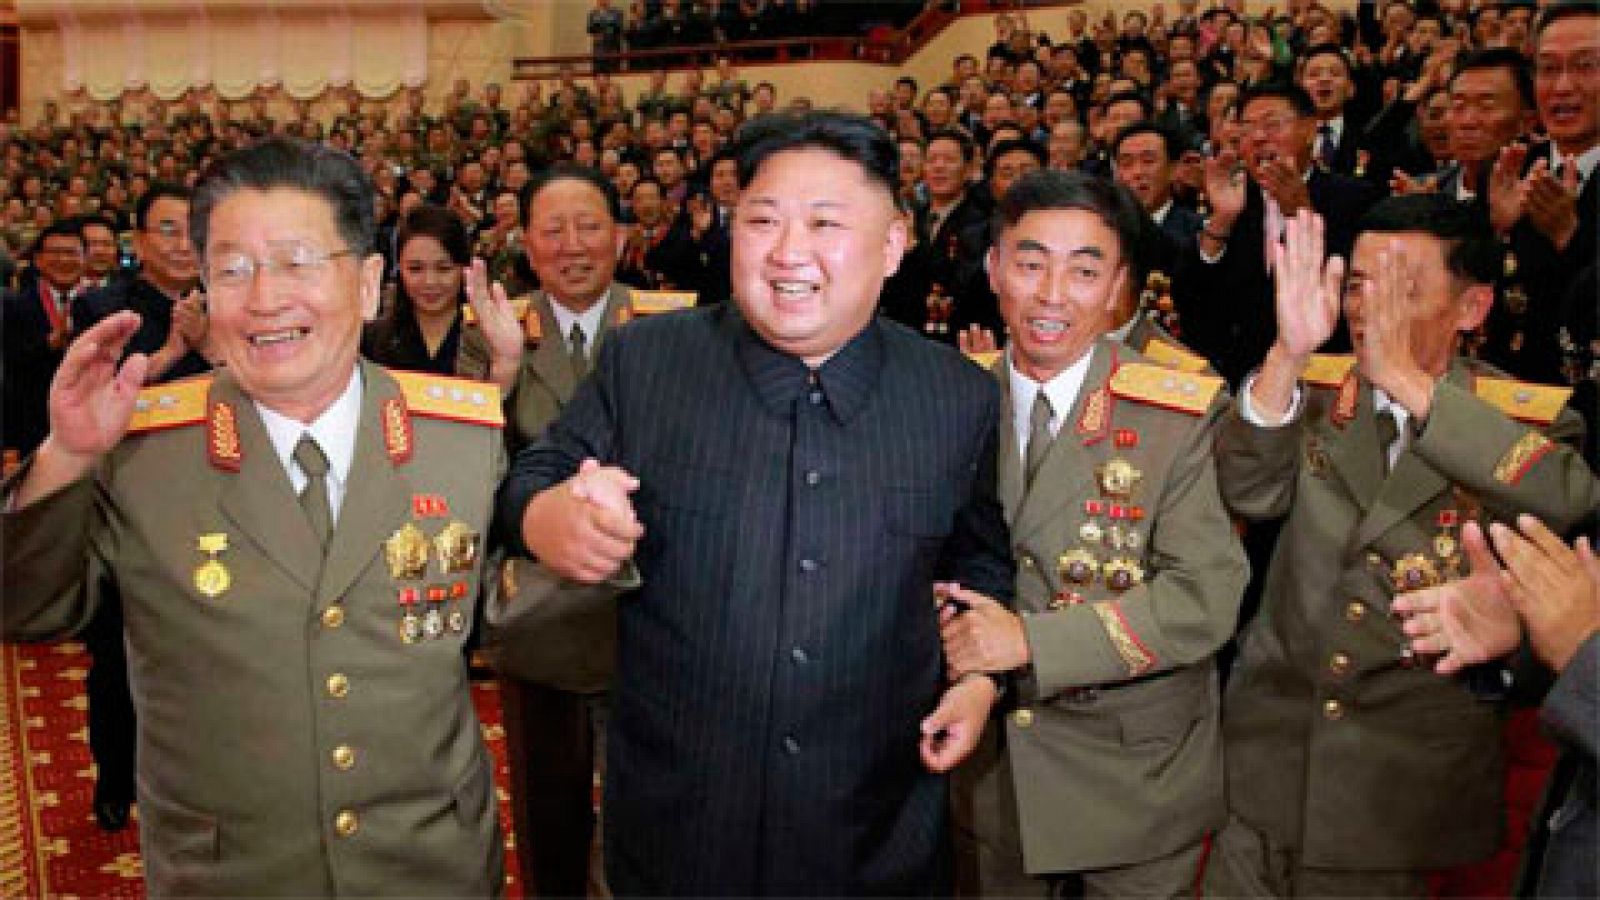 El líder norcoreano, Kim Jong-un, ha calificado de "gran victoria" la sexta prueba nuclear realizada por su país el pasado domingo y ha alabado la labor de los funcionarios y expertos que la llevaron a cabo, según informa la agencia estatal KCNA.Dura